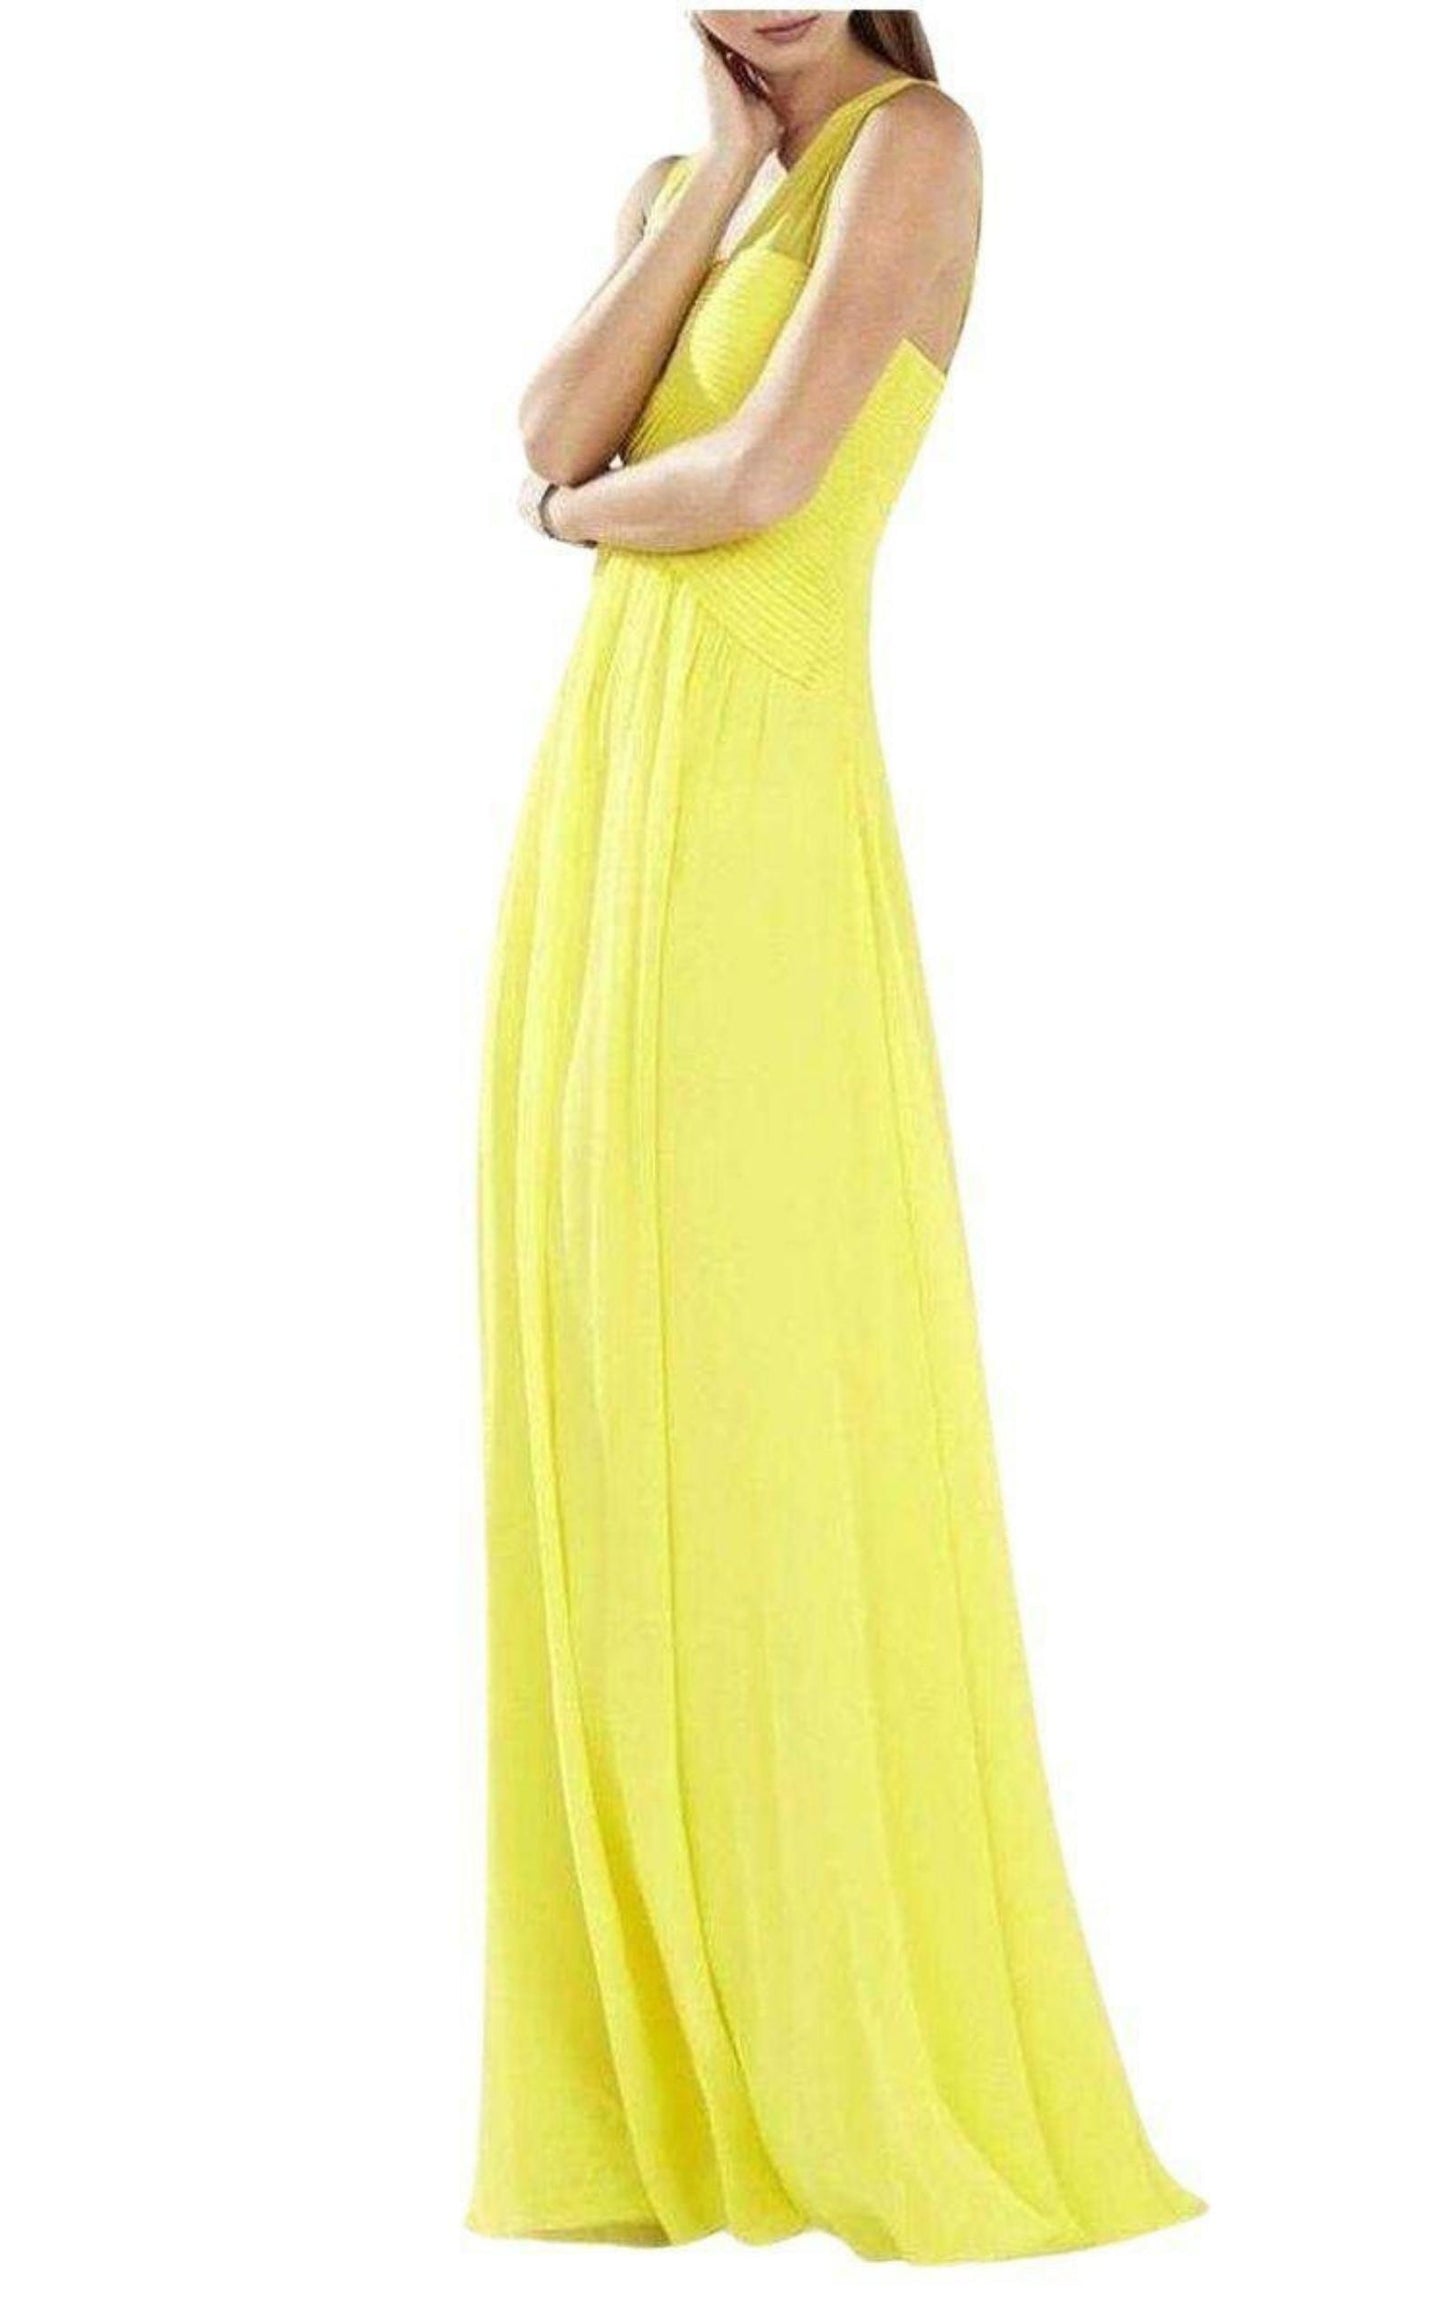  BCBGMAXAZRIASleeveless Yellow Gown - Runway Catalog